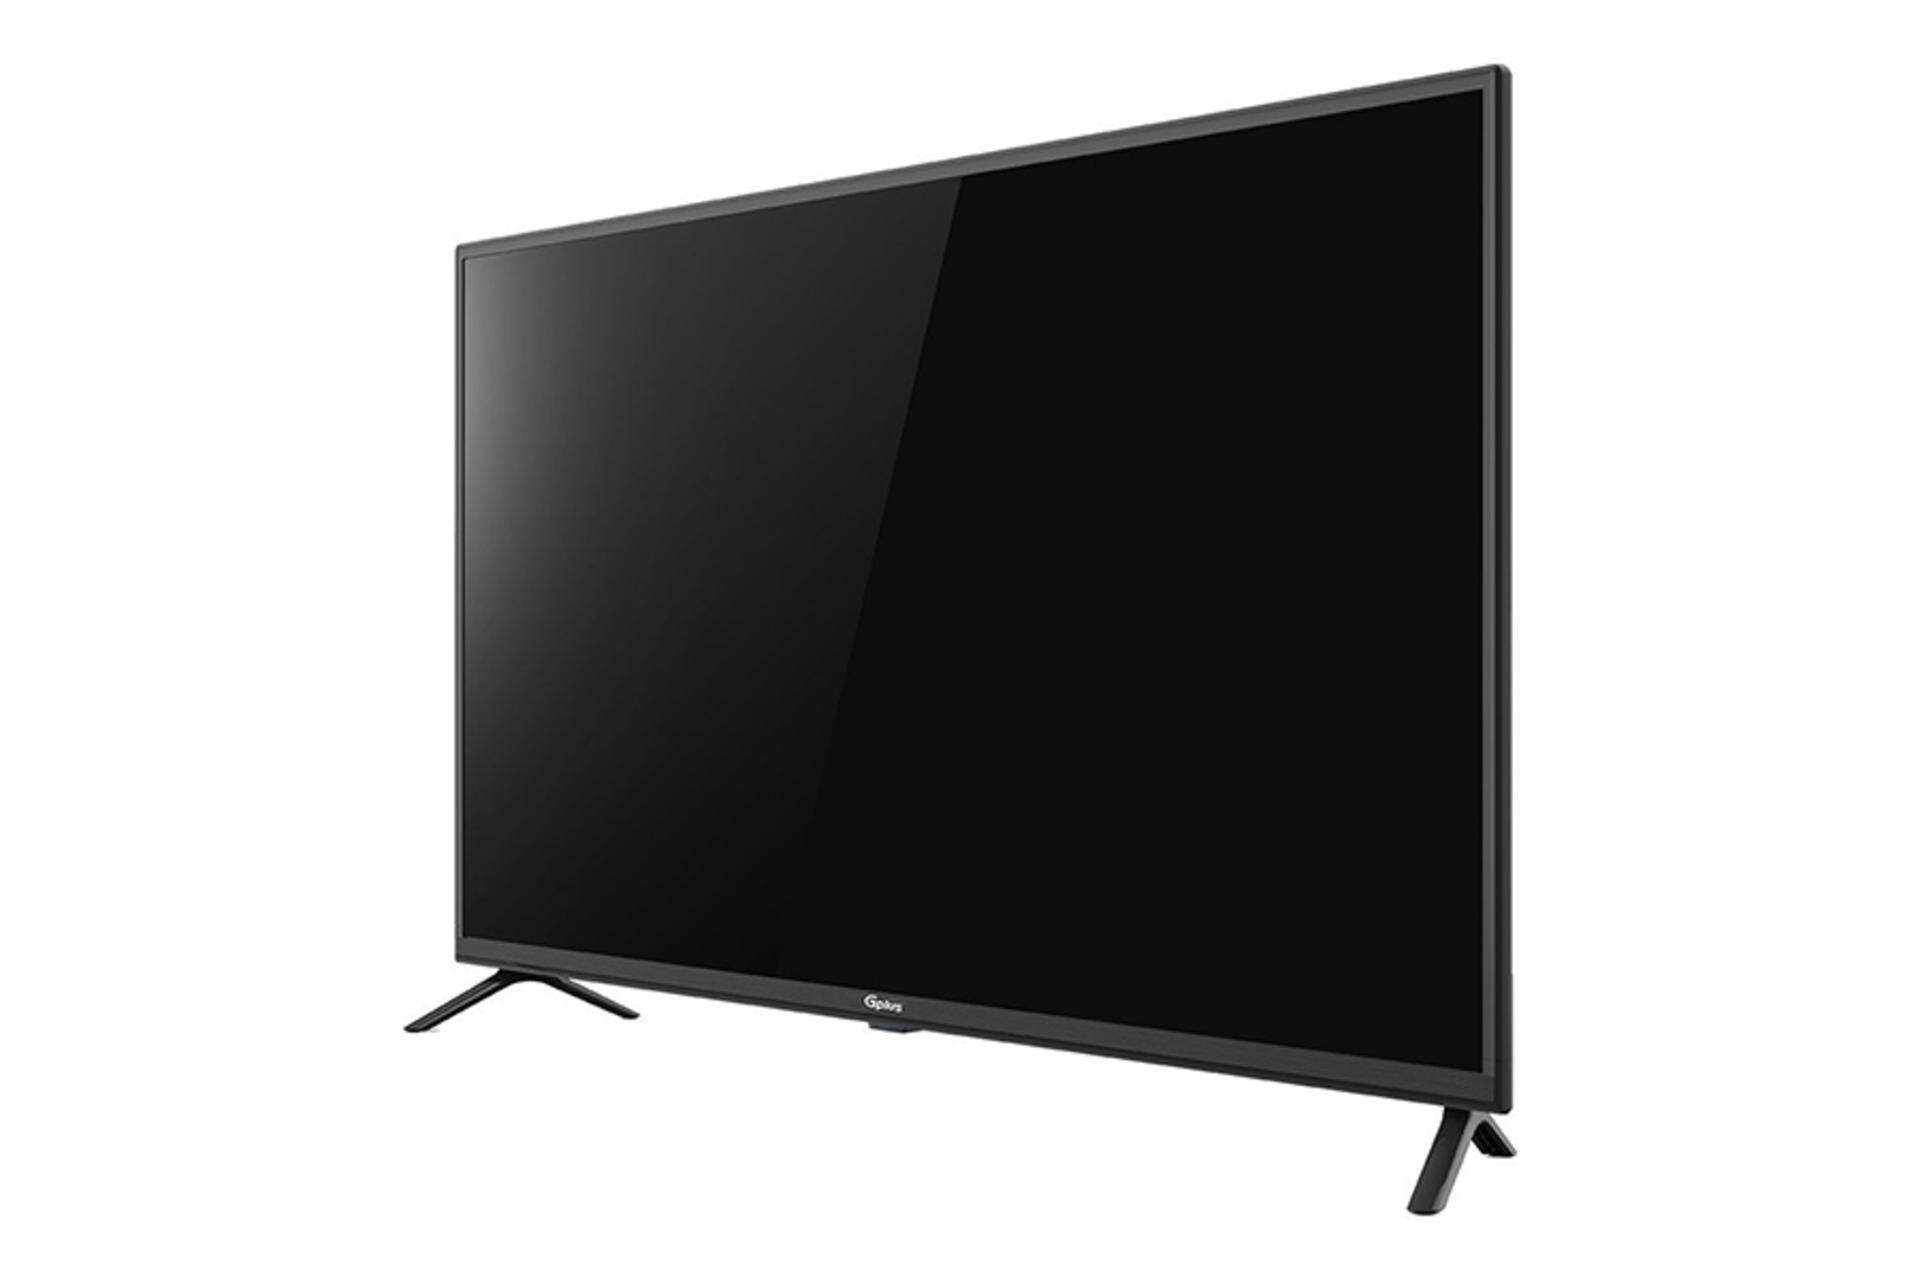 قیمت تلویزیون جی پلاس RH614N مدل 43 اینچ + مشخصات